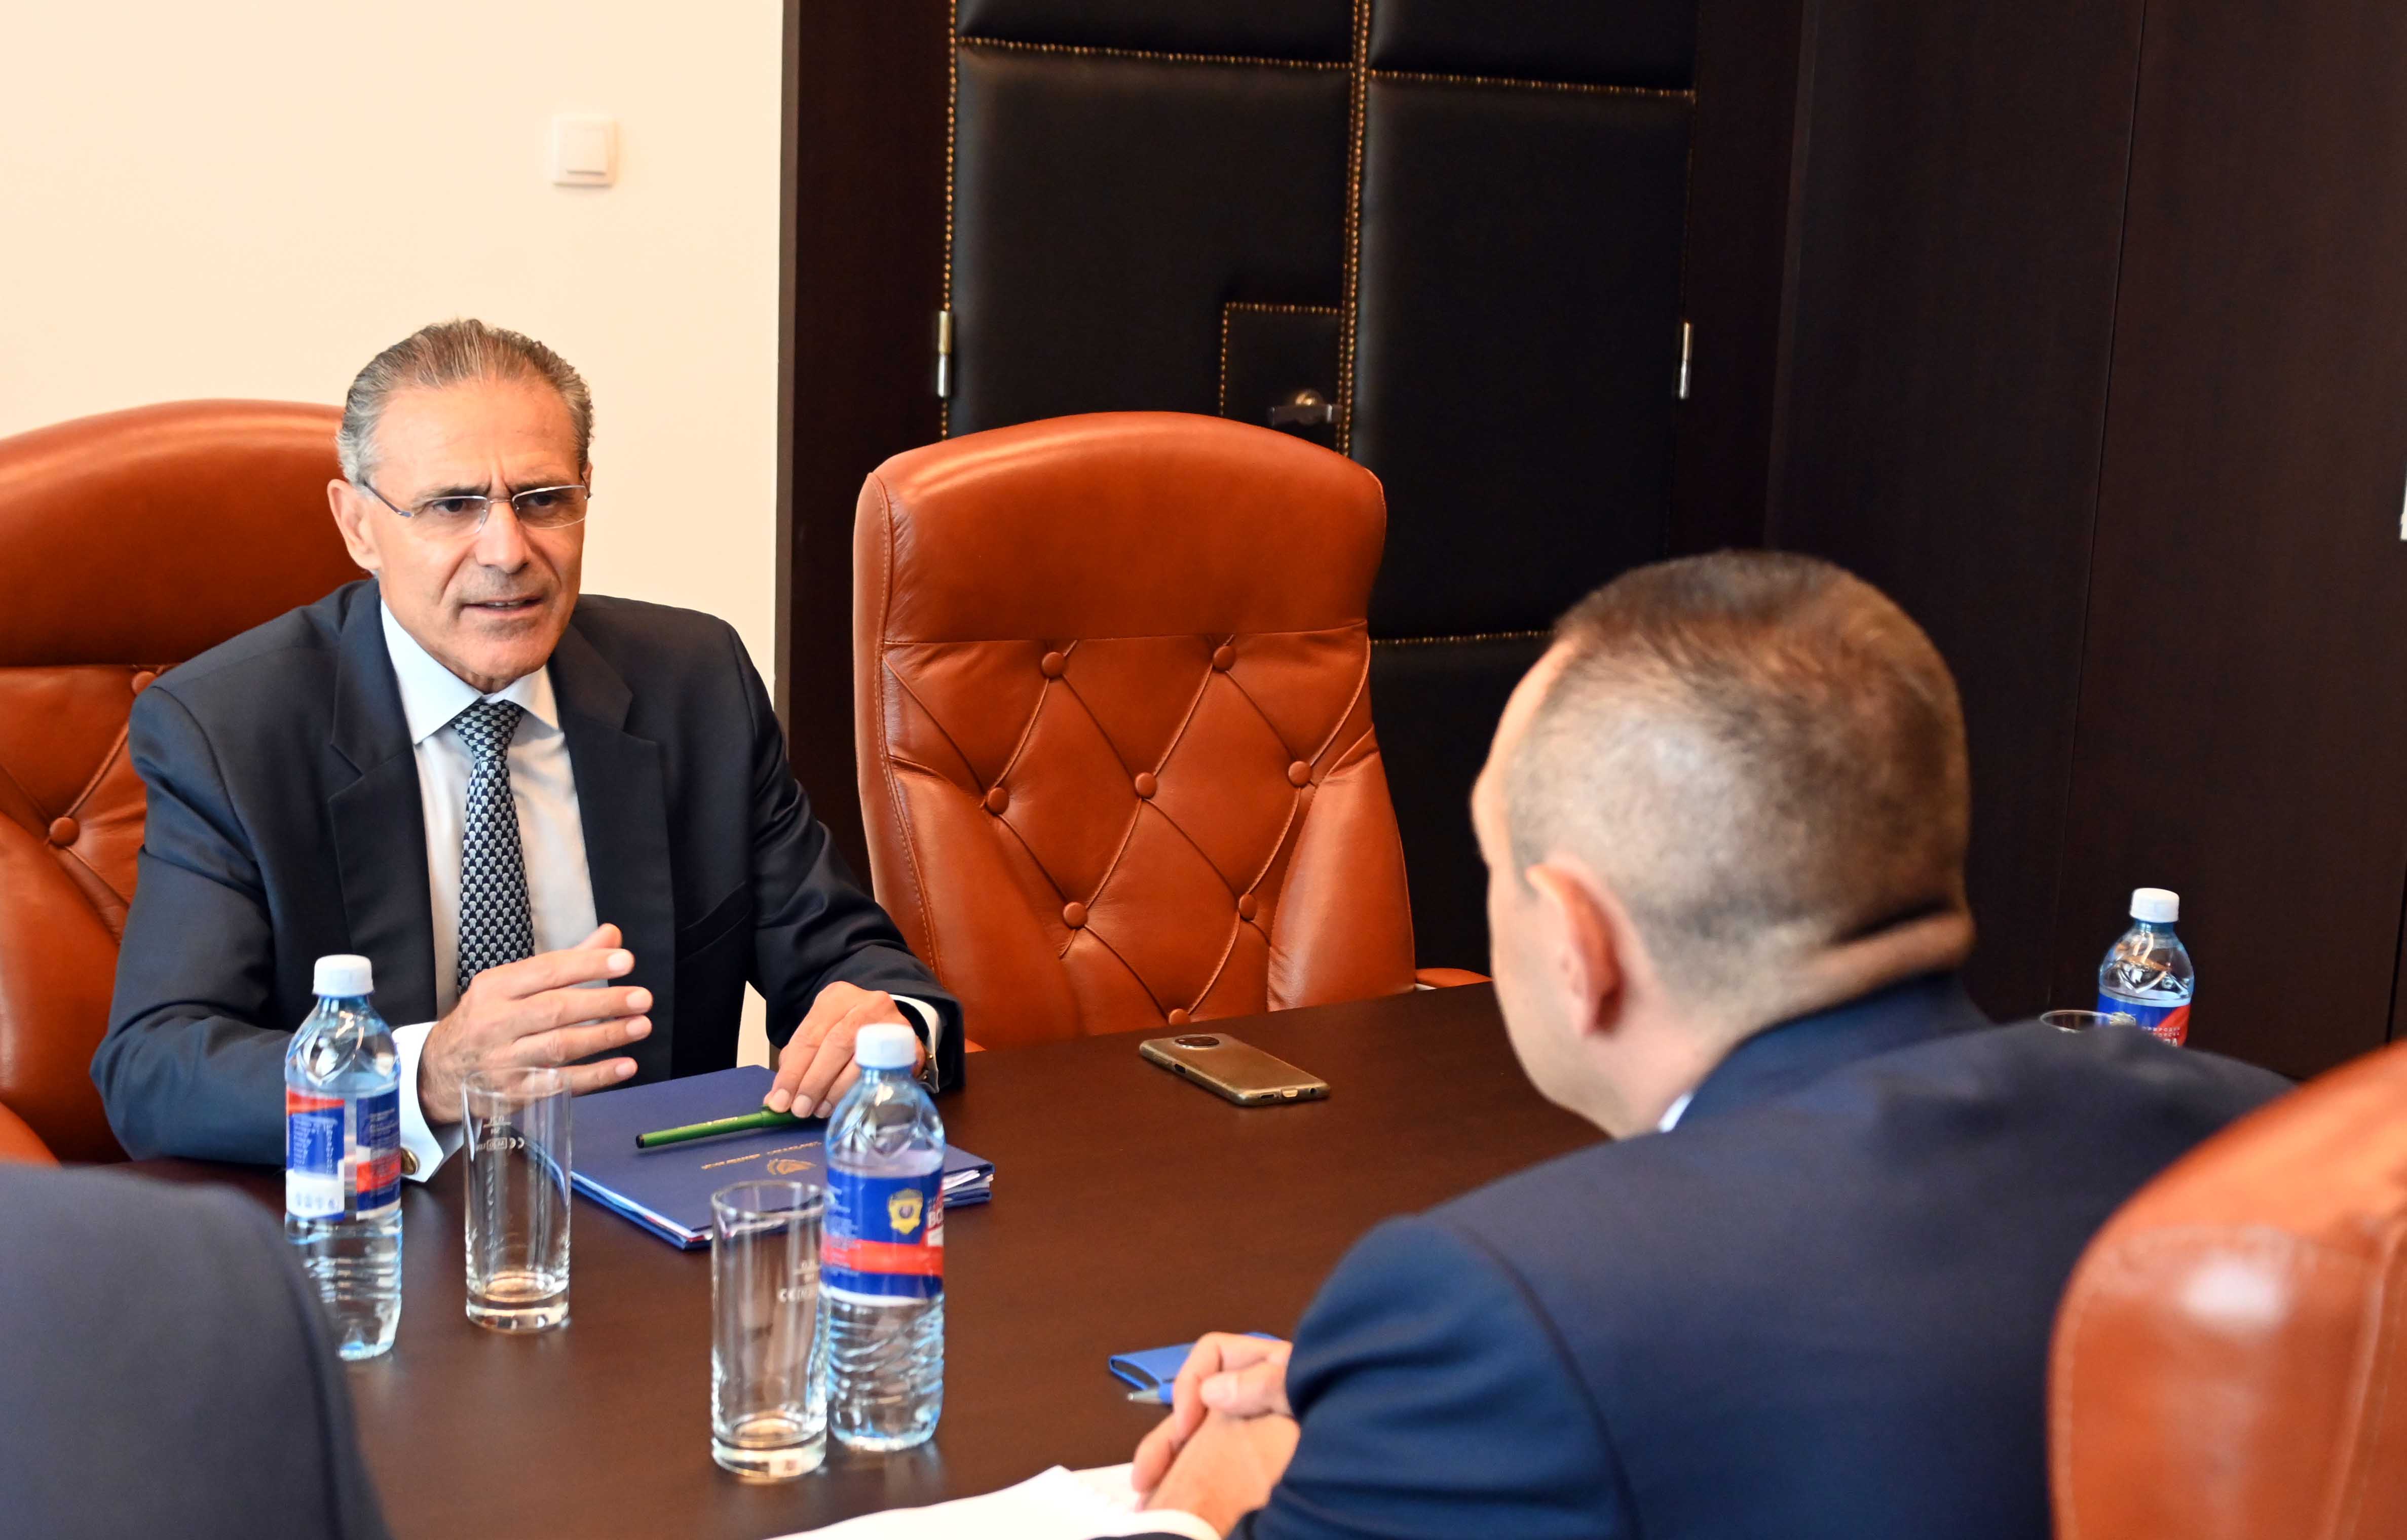 Ministar Aleksandar Vulin sastao se sa ambasadorom Republike Kipar Dimitriosom Teofilaktuom